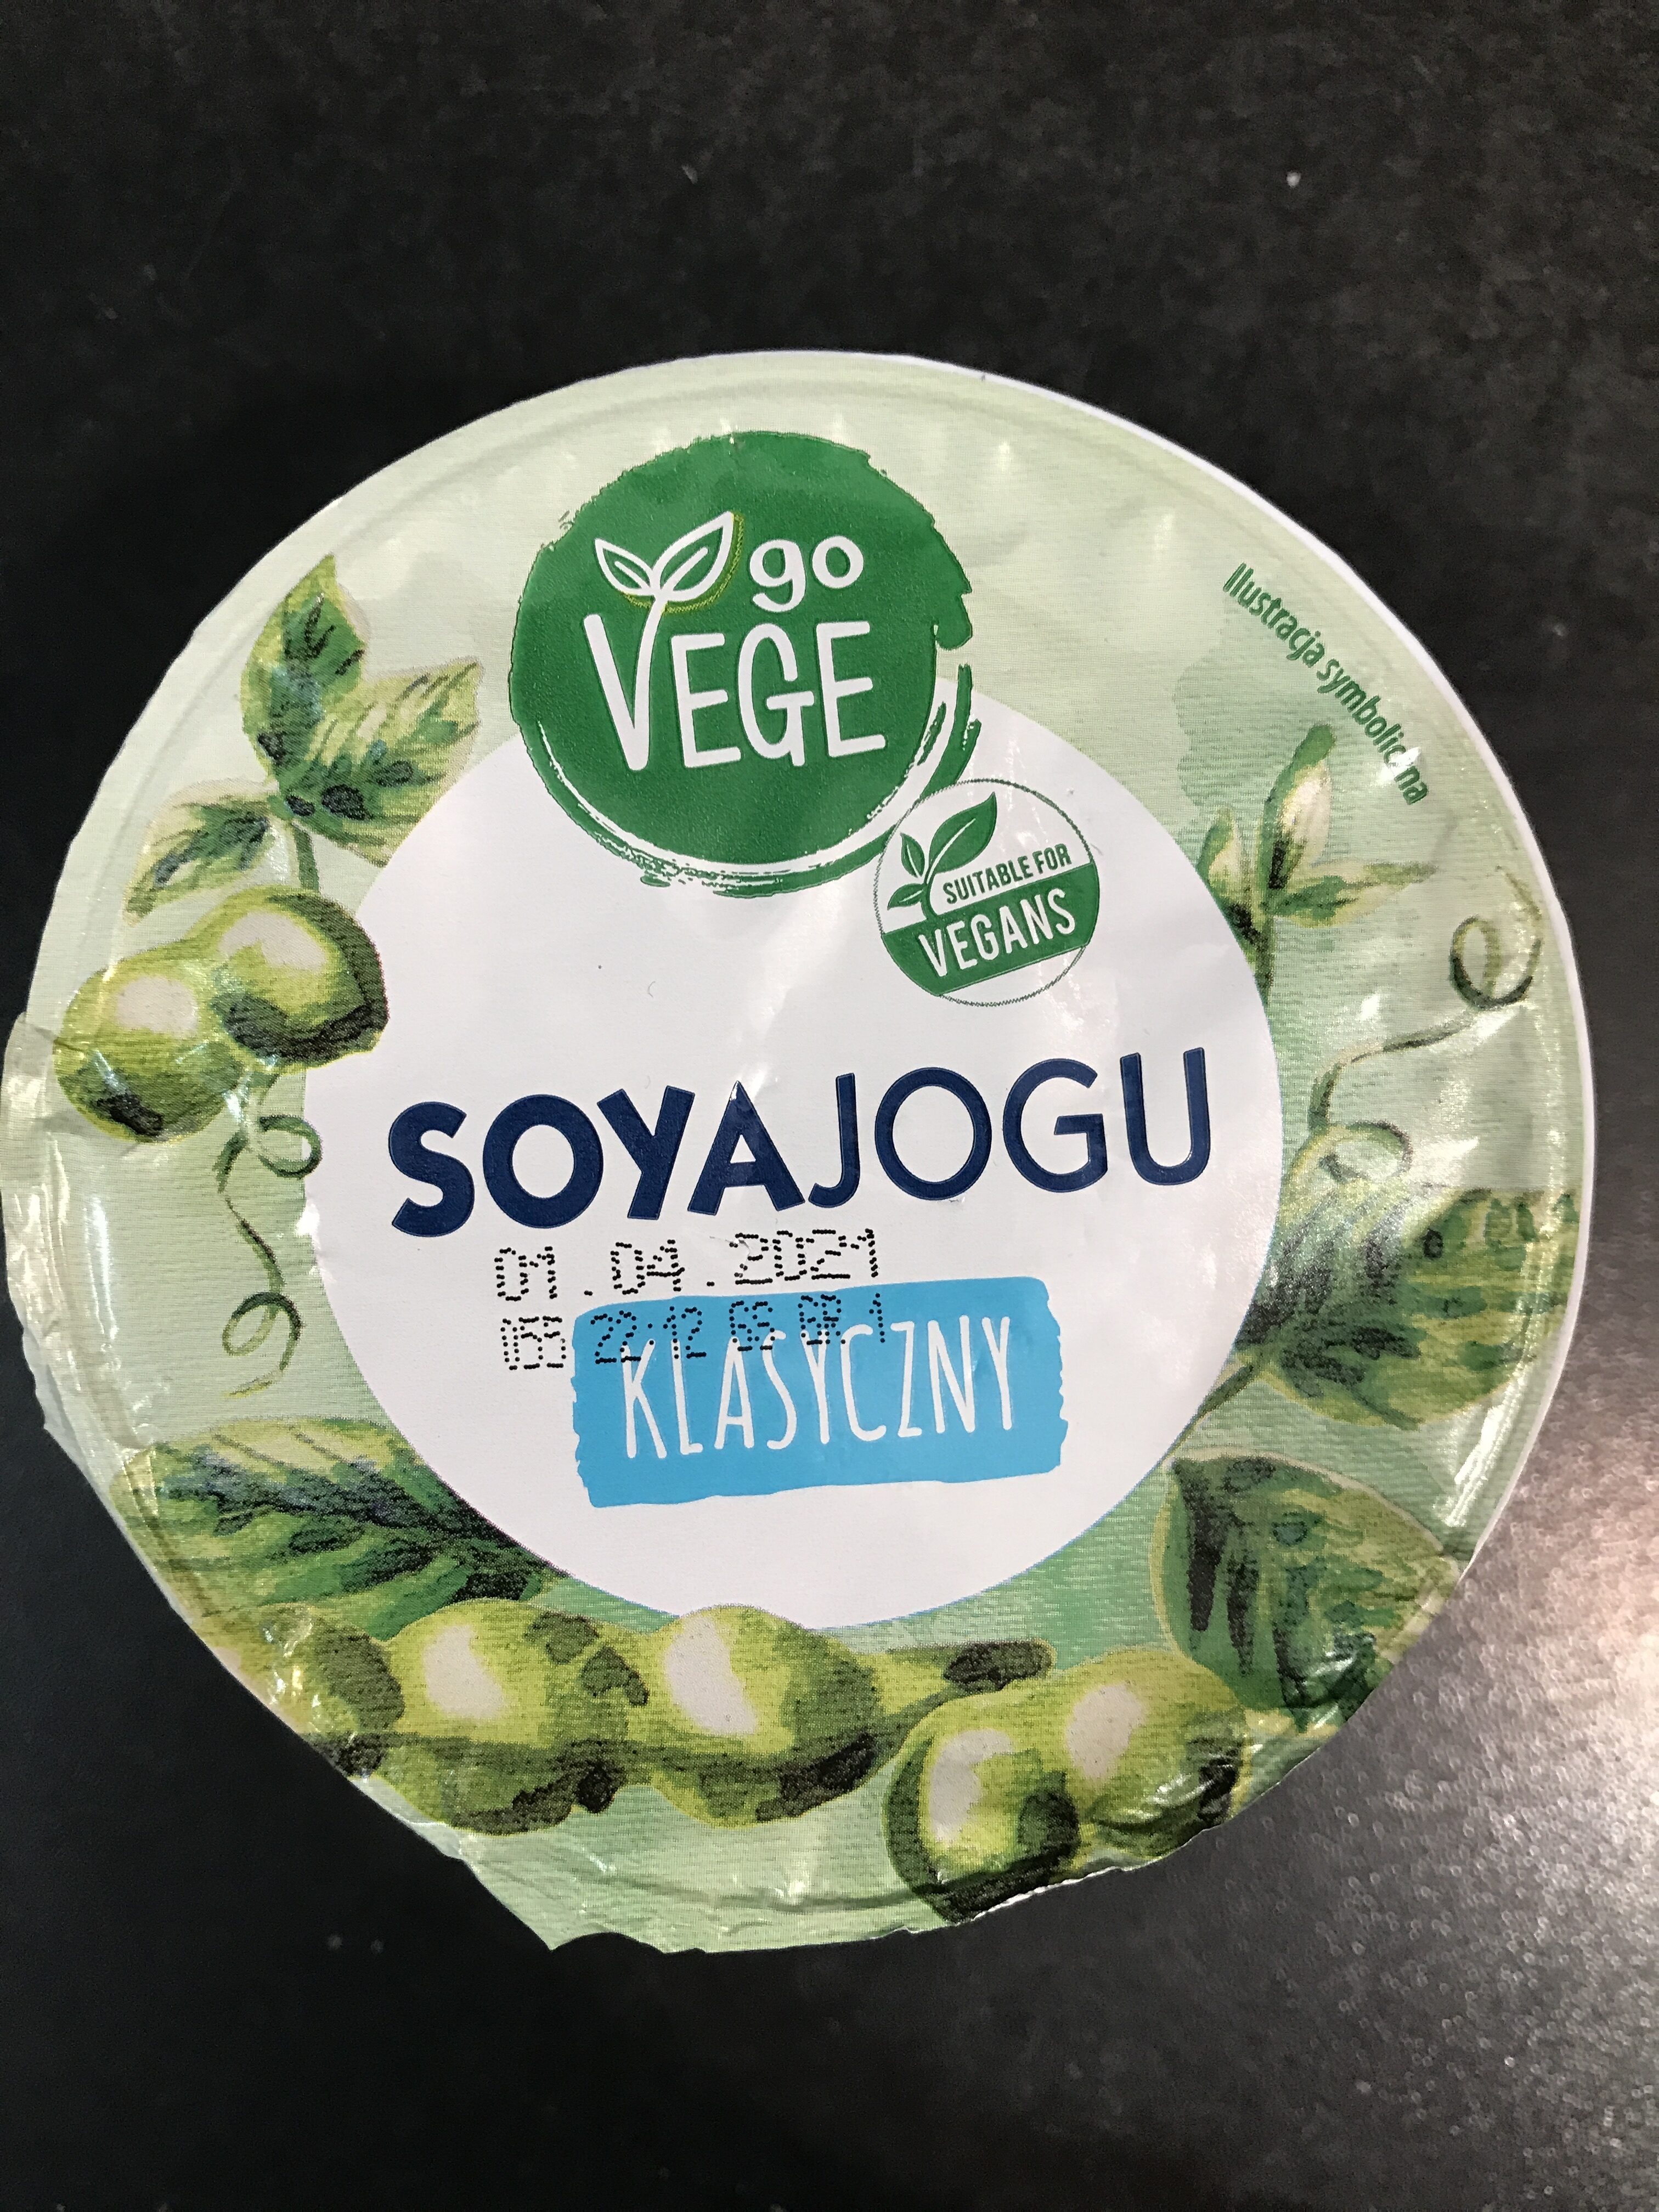 Soyajogu - Produkt - en